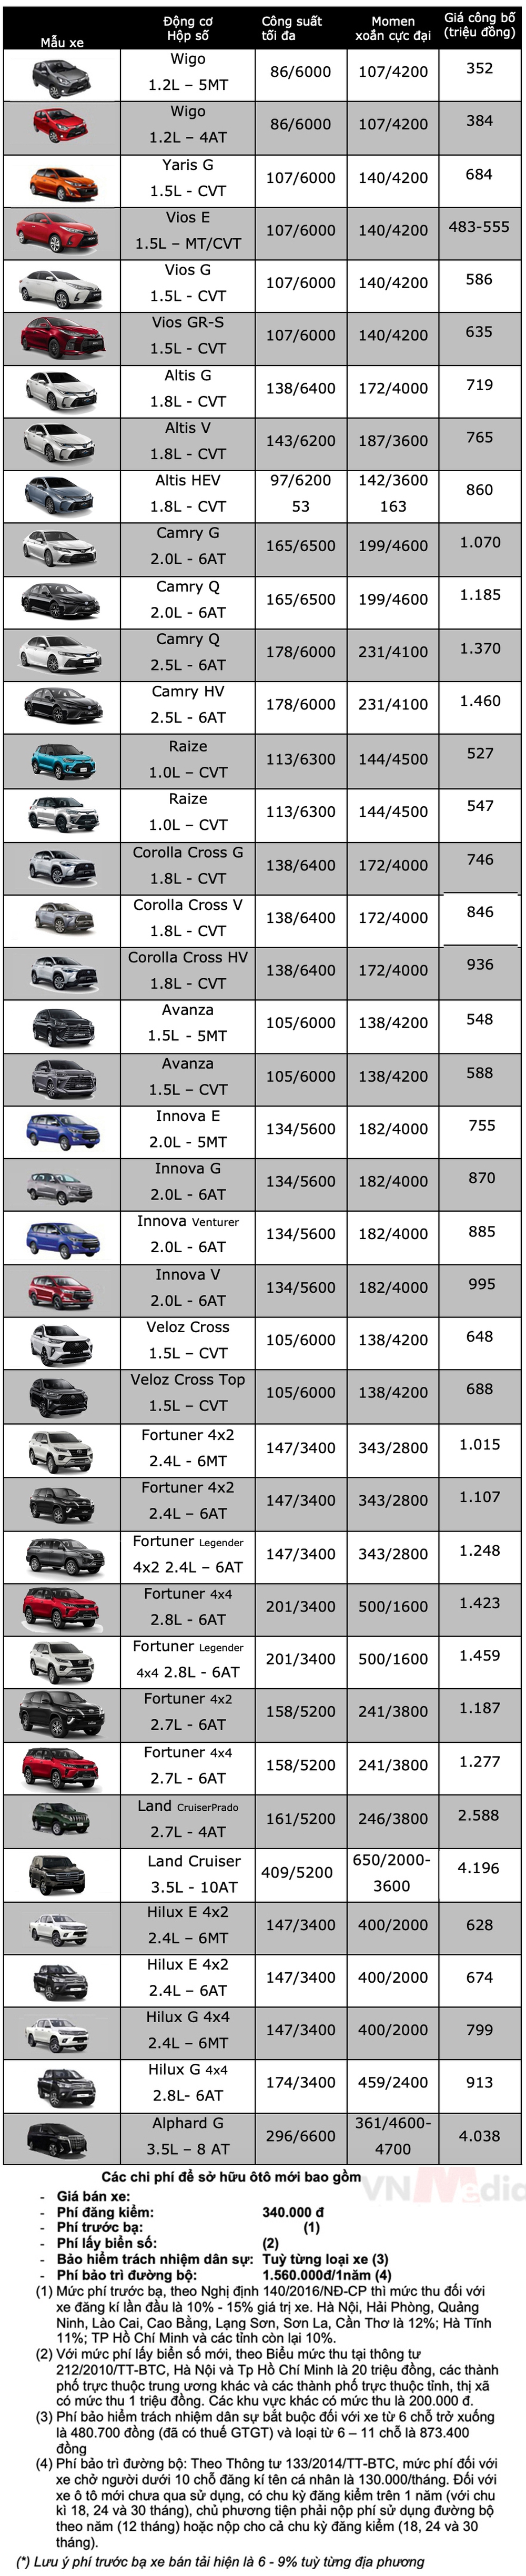 Bảng giá xe Toyota tháng 5: Veloz Cross giảm giá tới 65 triệu đồng - Ảnh 2.